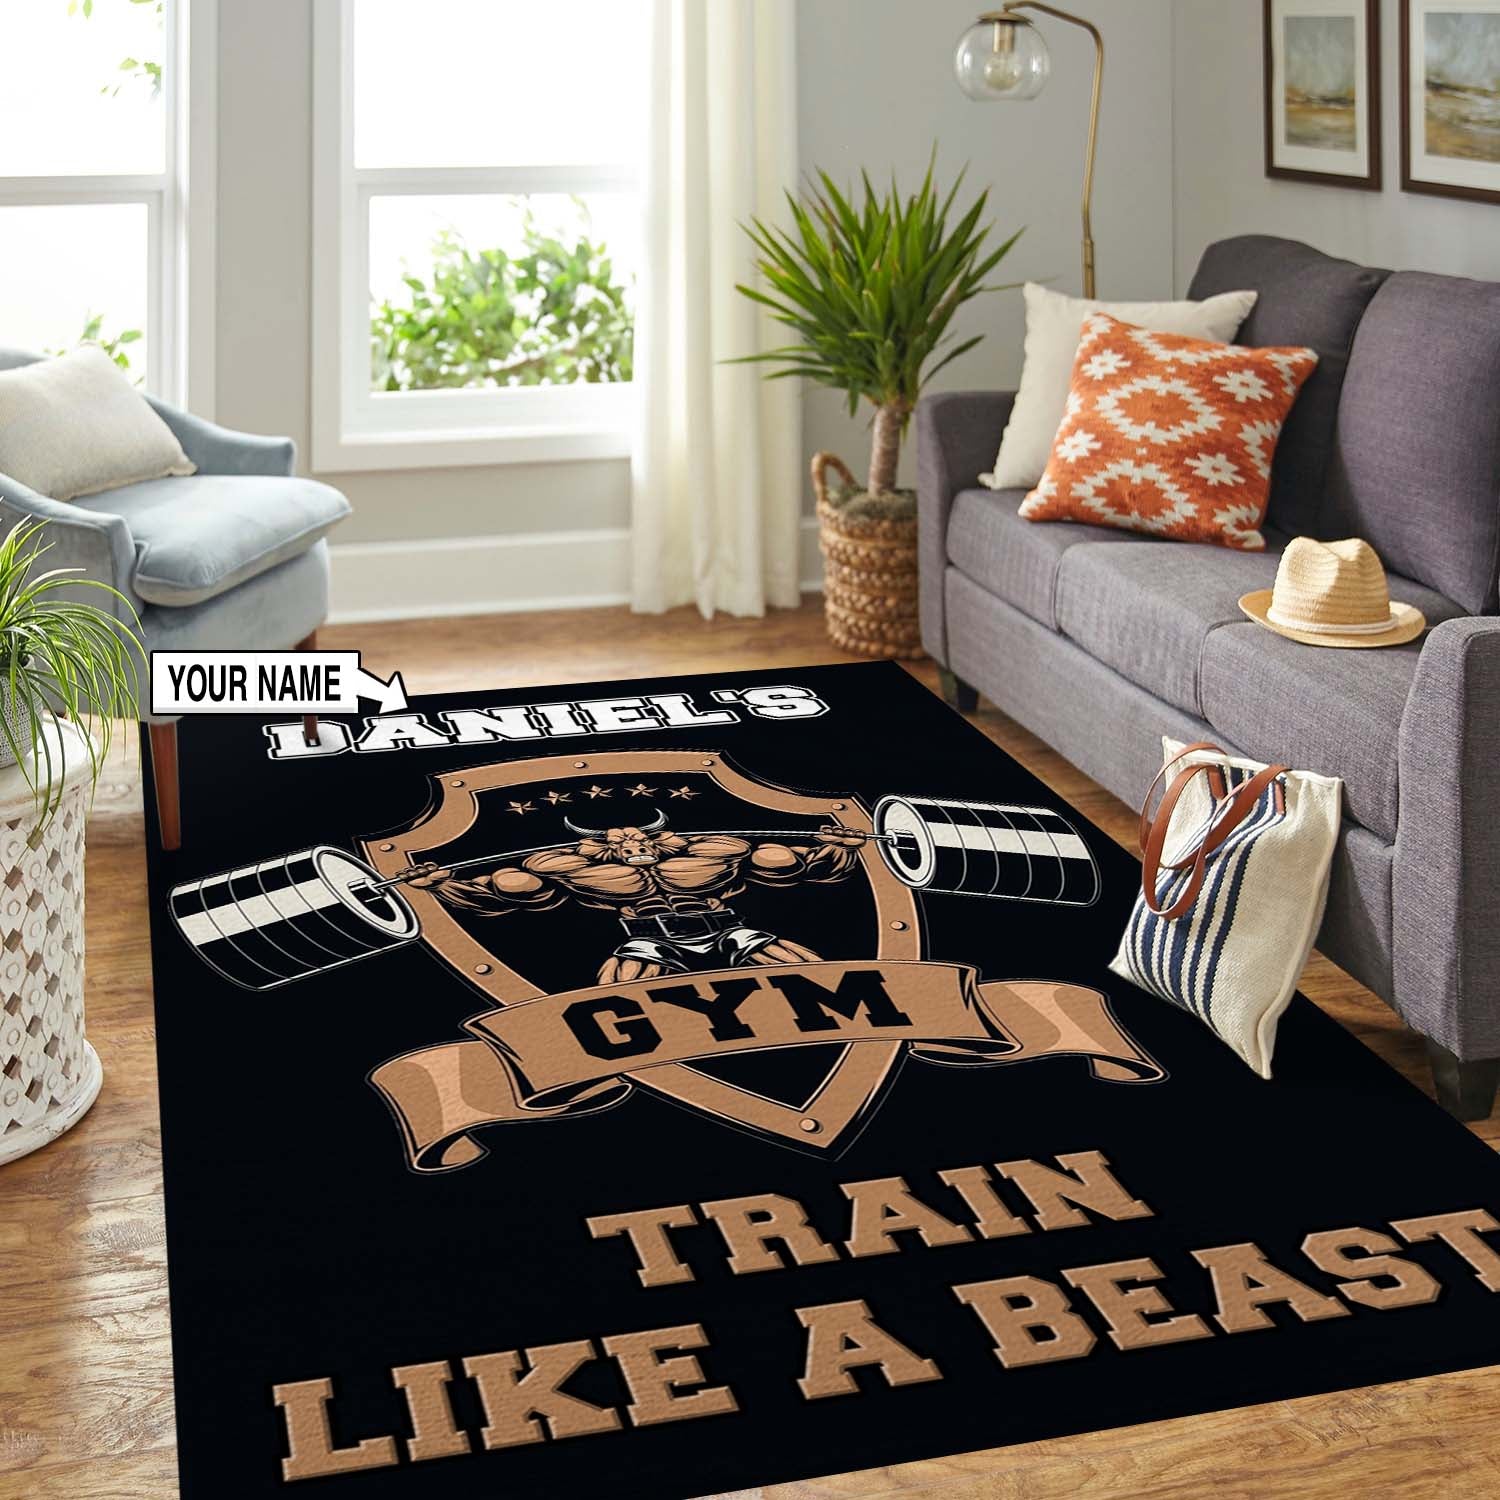 Personalized Gym Rug Train Like A Beast Home Gym Decor